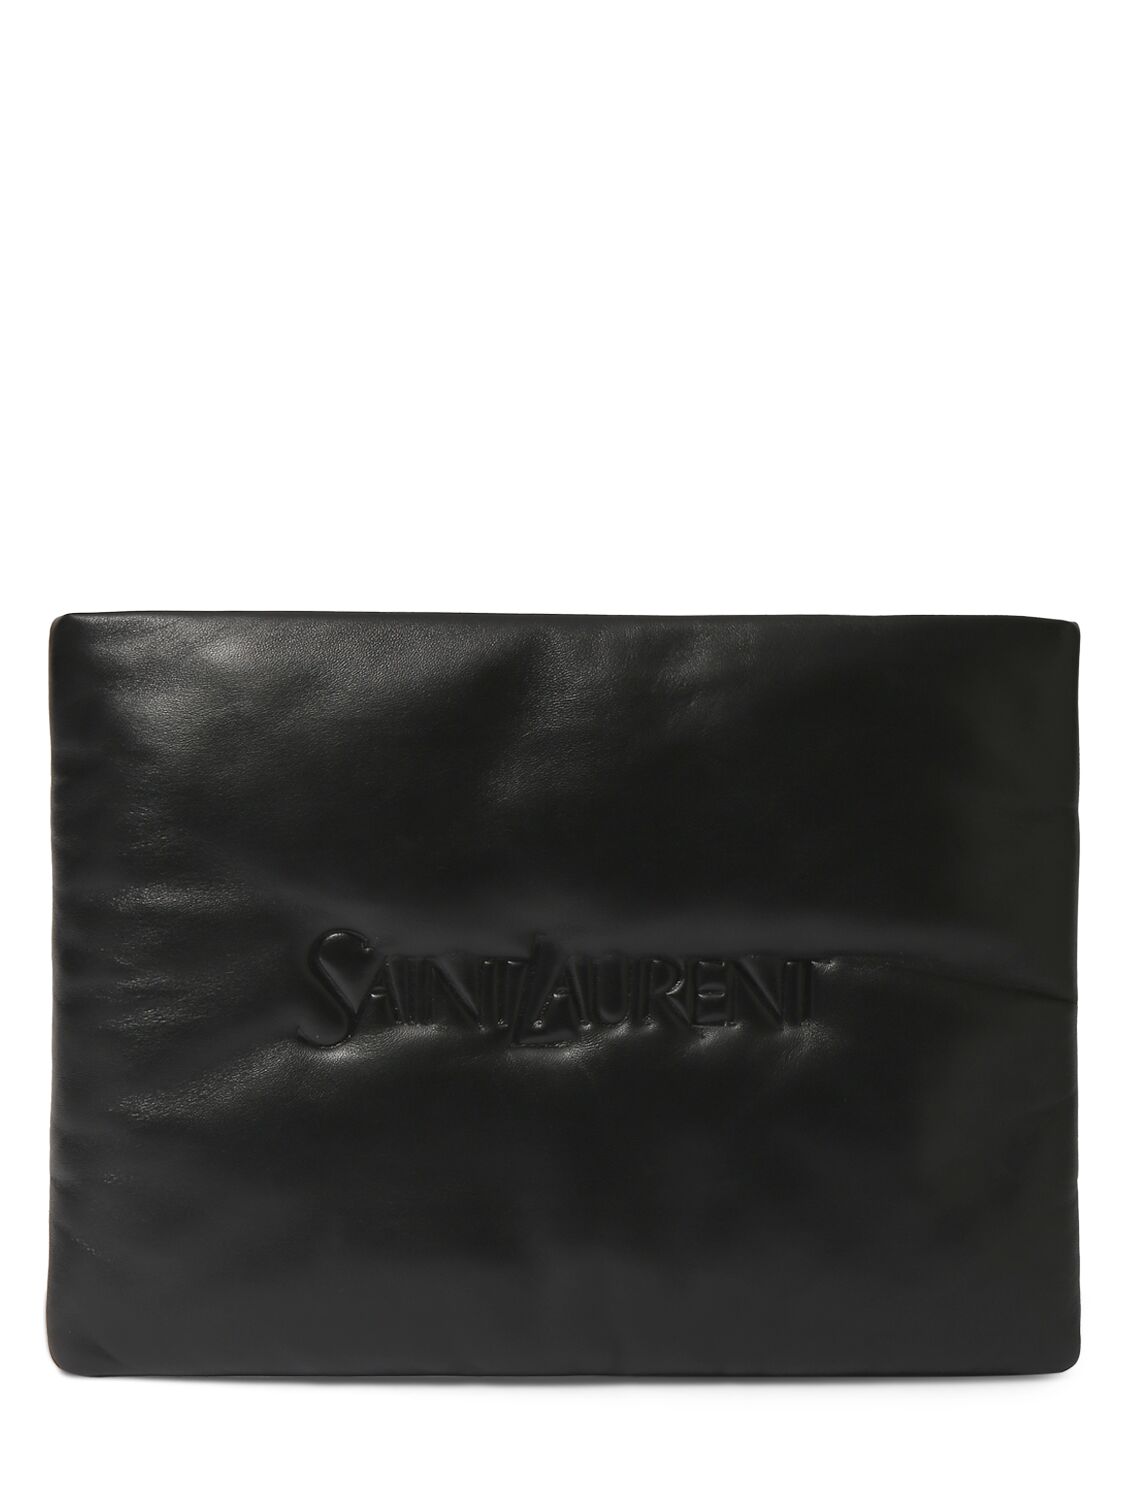 Saint Laurent Large Leather Pouch - SAINT LAURENT - Modalova